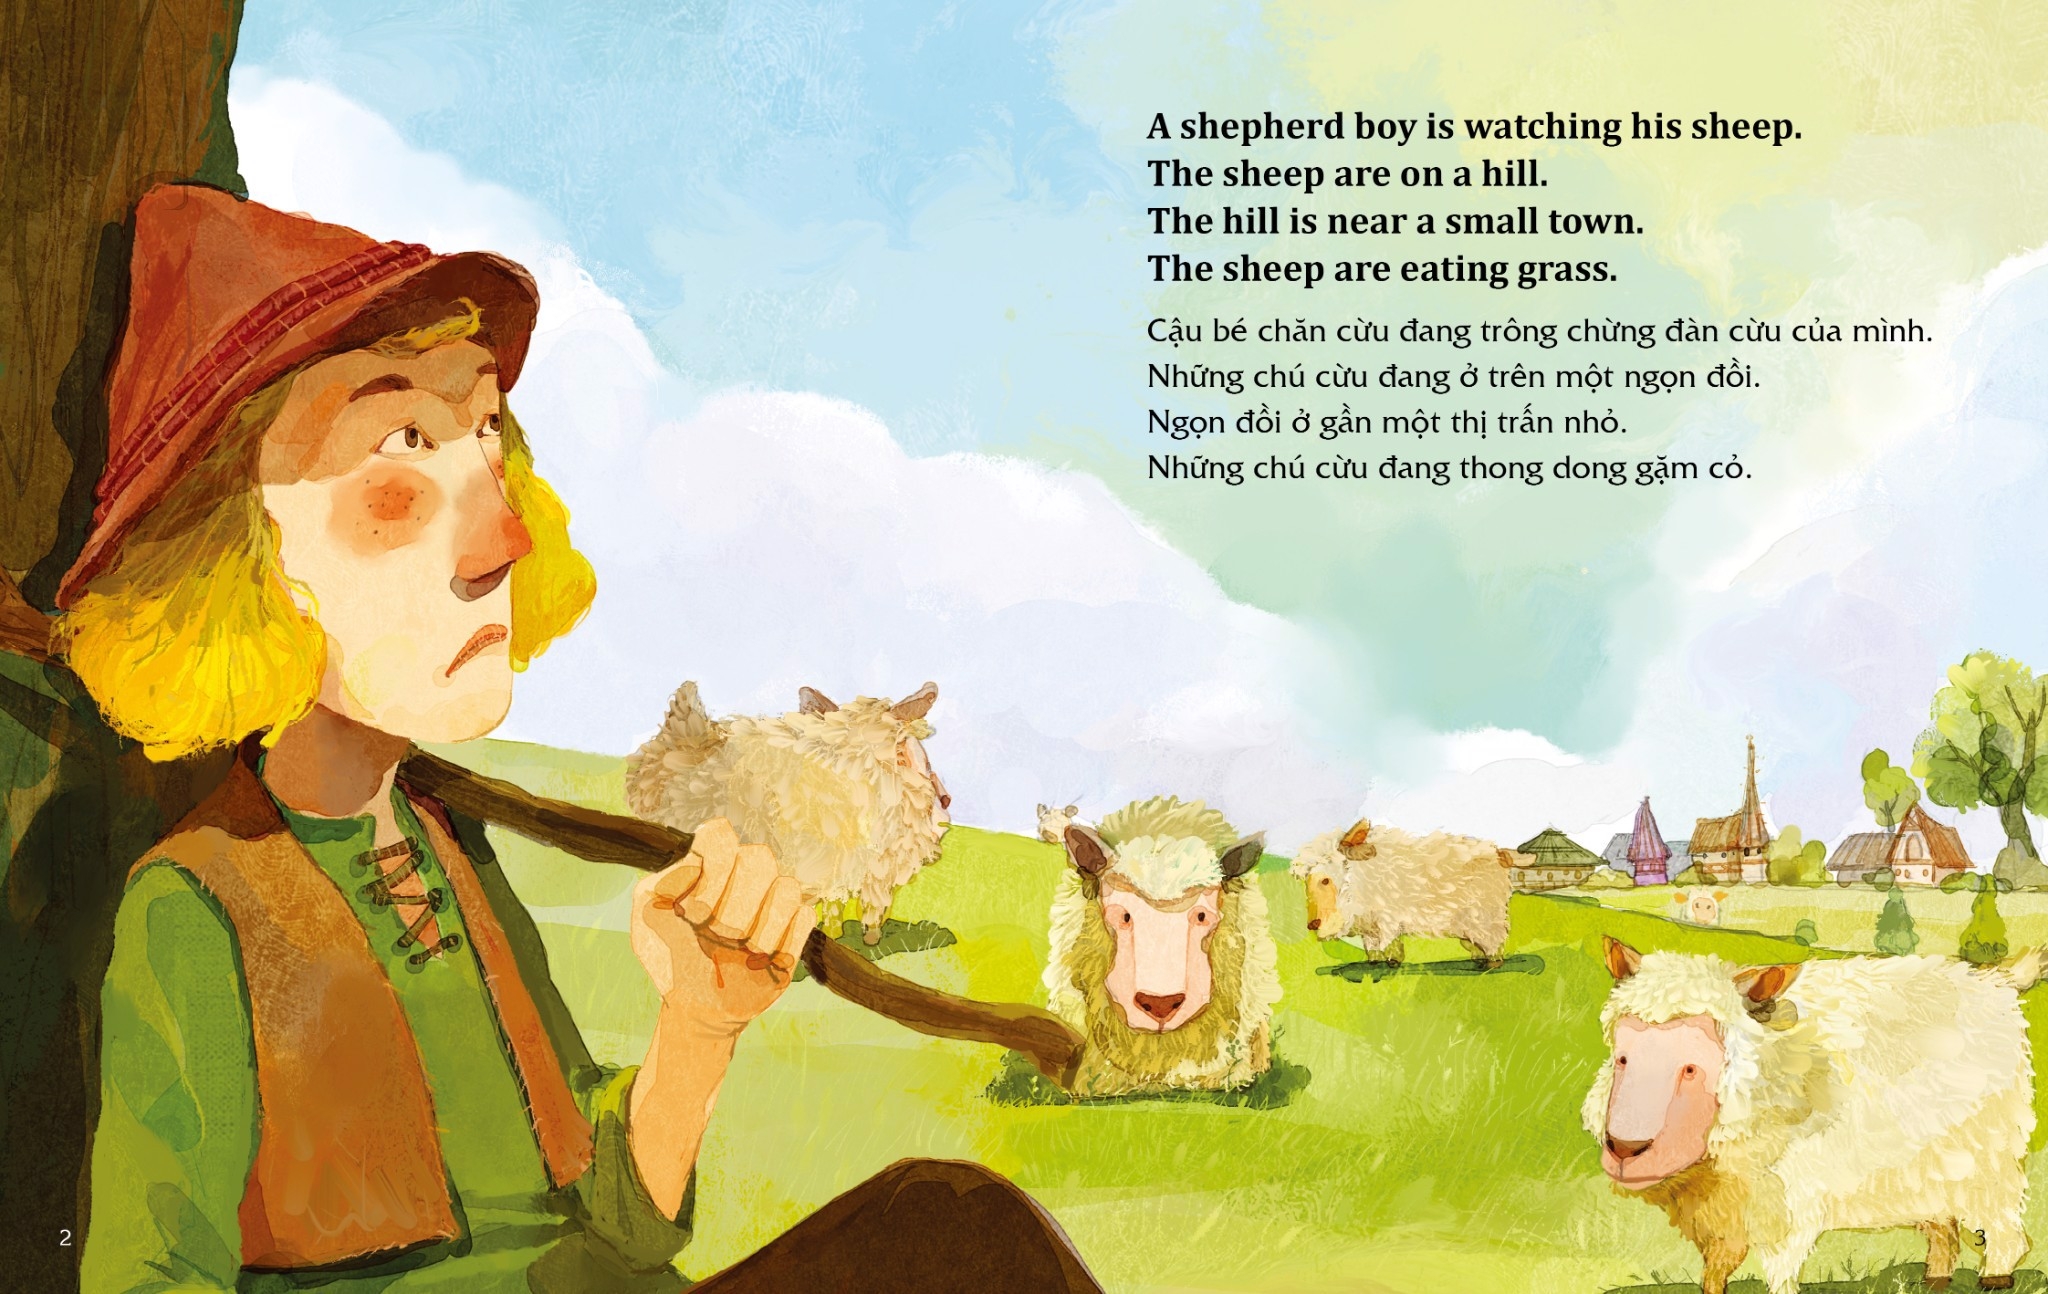 Học Tiếng Anh Cùng Truyện Ngụ Ngôn Aesop - Cậu Bé Chăn Cừu Và Con Sói - The Shepherd Boy And The Wolf PDF